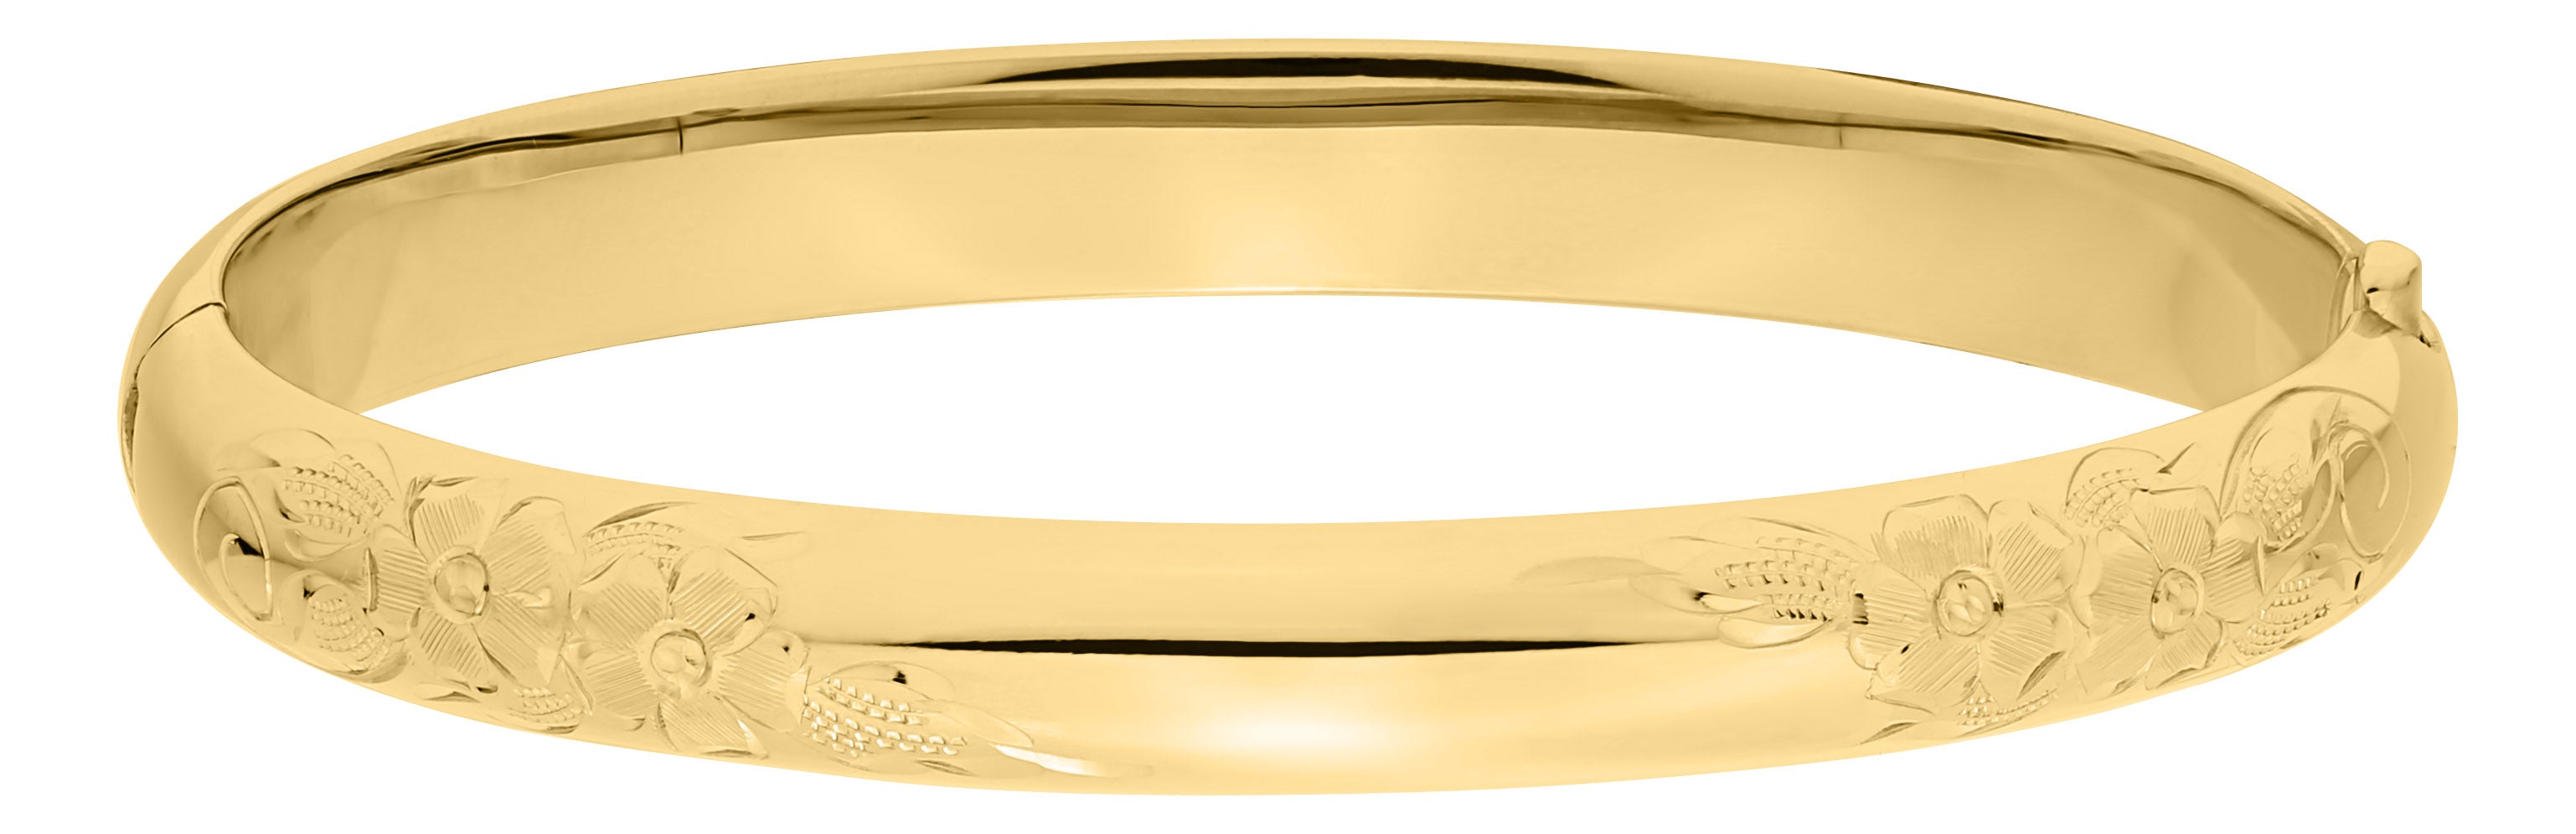 Gold Filled Engraved Bracelet